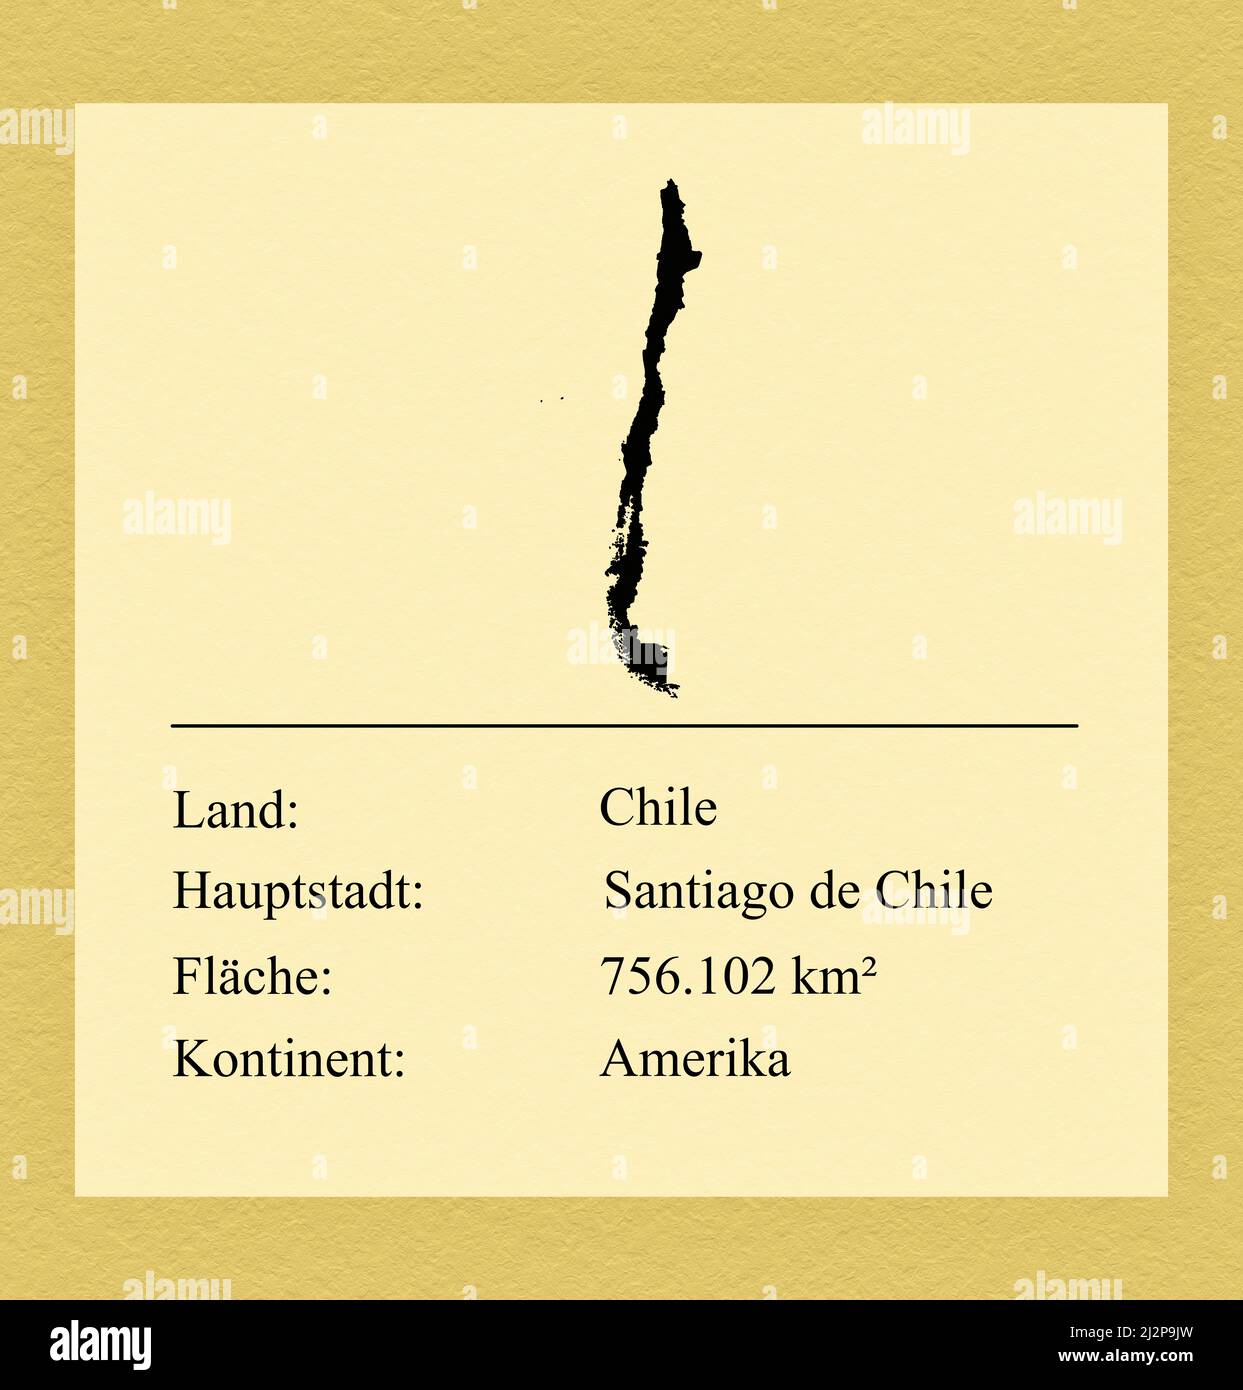 Umrisse des Landes Chile, darunter ein kleiner Steckbrief mit Ländernamen, Hauptstadt, Fläche und Kontinent Foto Stock